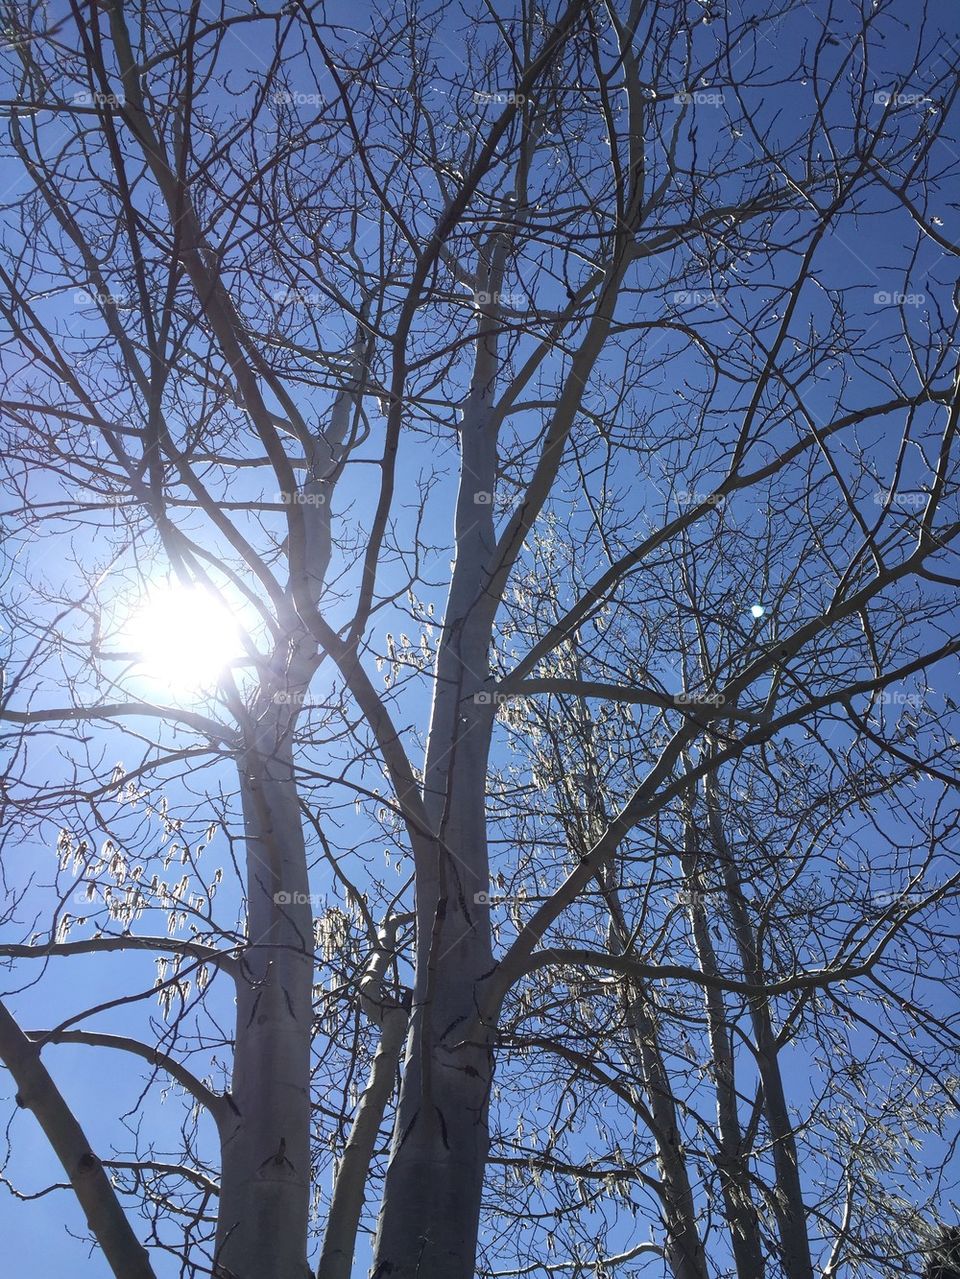 Sun trees